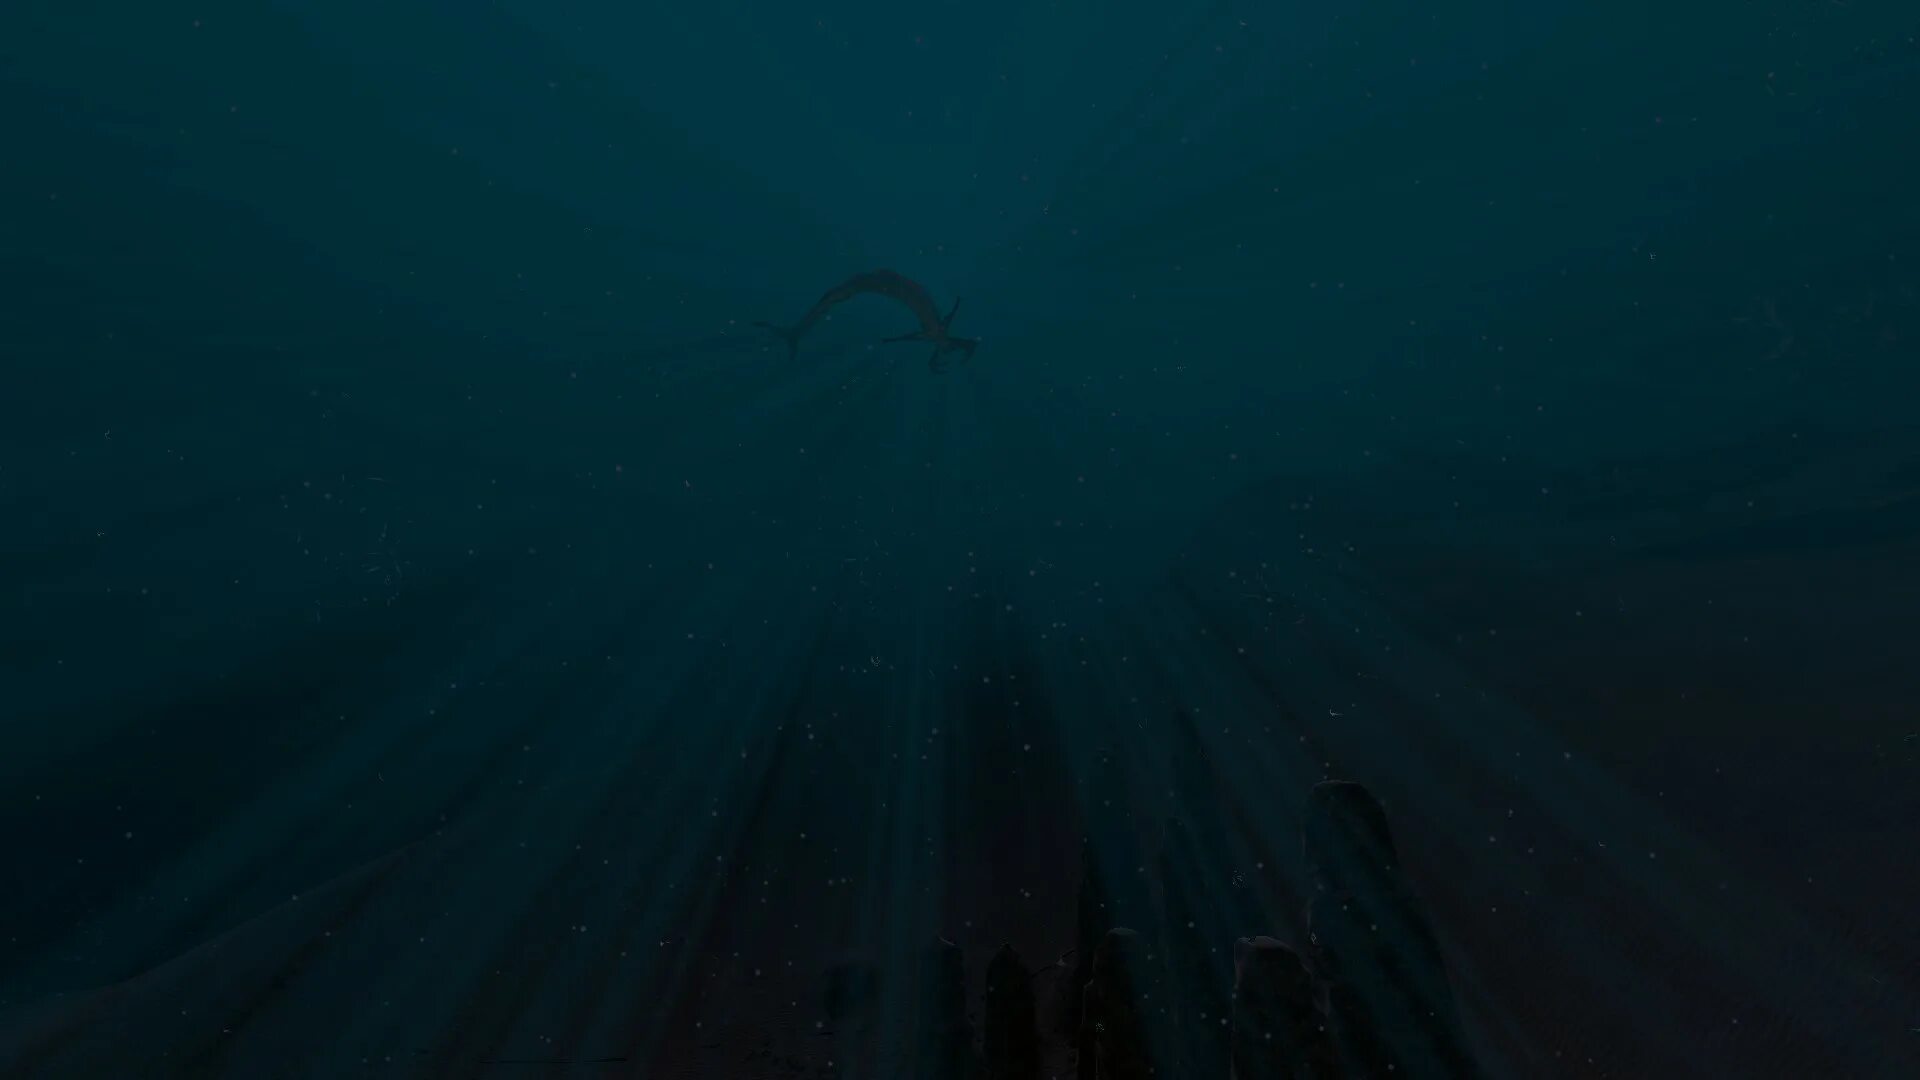 Талассофобия Subnautica. «Глубины бездны» (Abyssal depths). Морские глубины. Дно океана. Бездна место